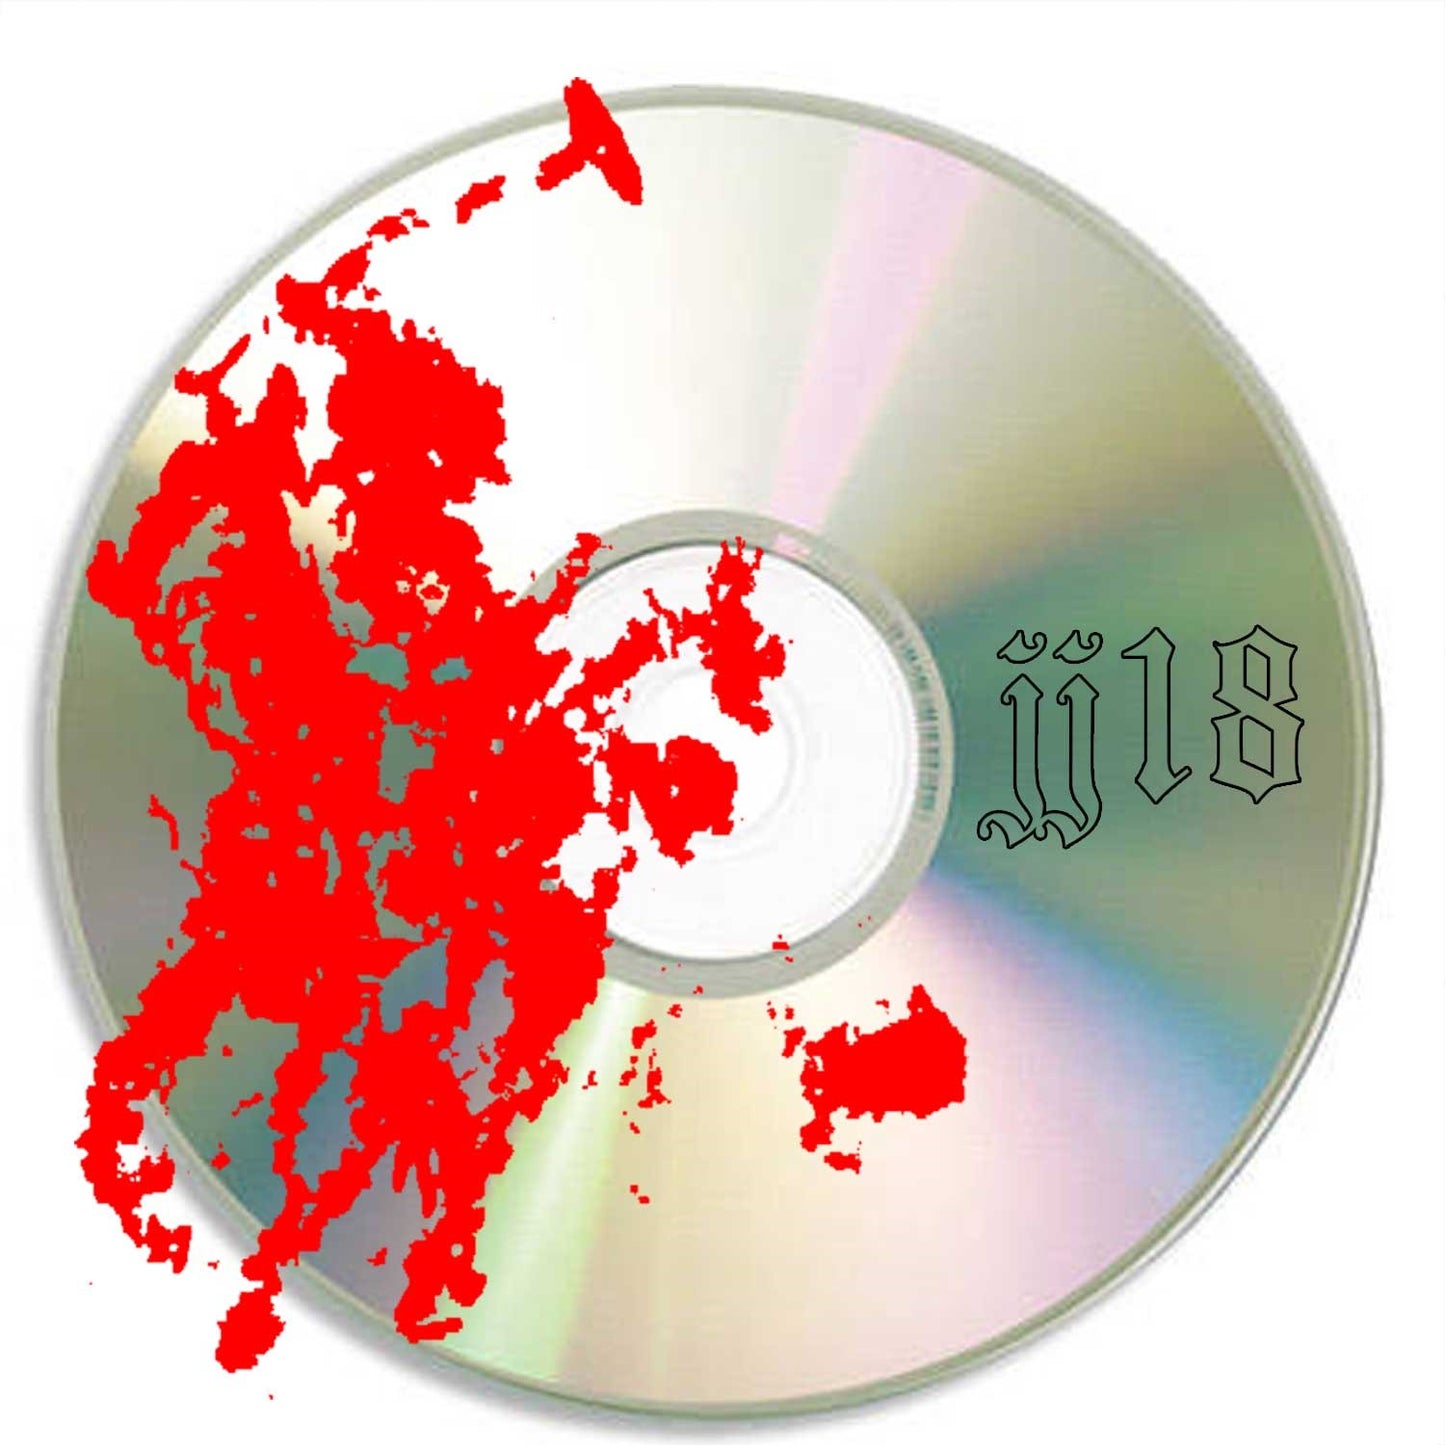 jj18 - JJ's prayer CD